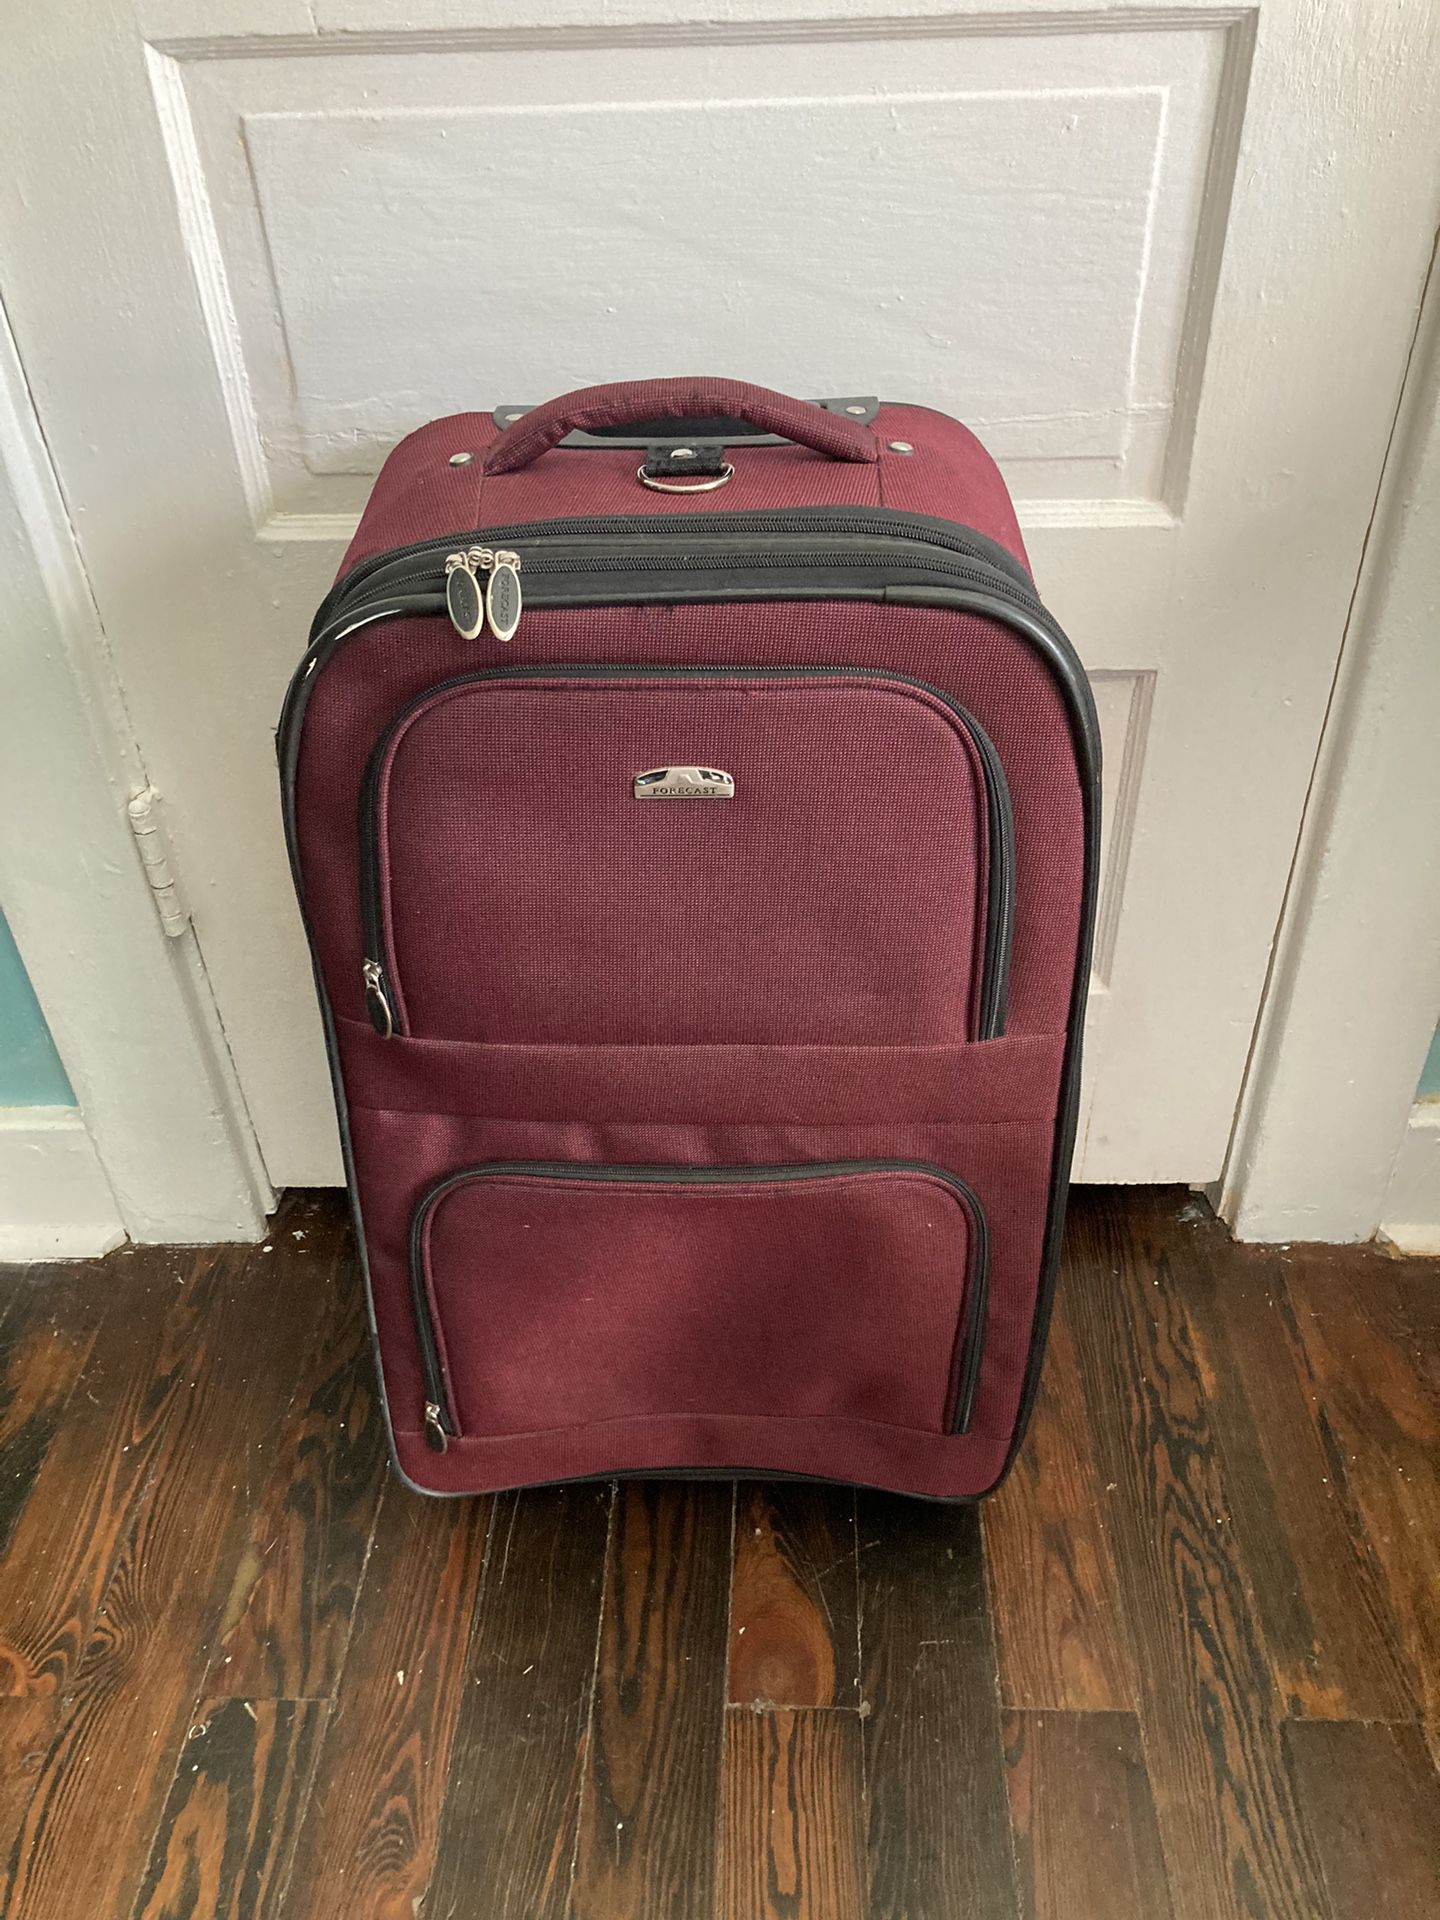 Suitcase Luggage Bag